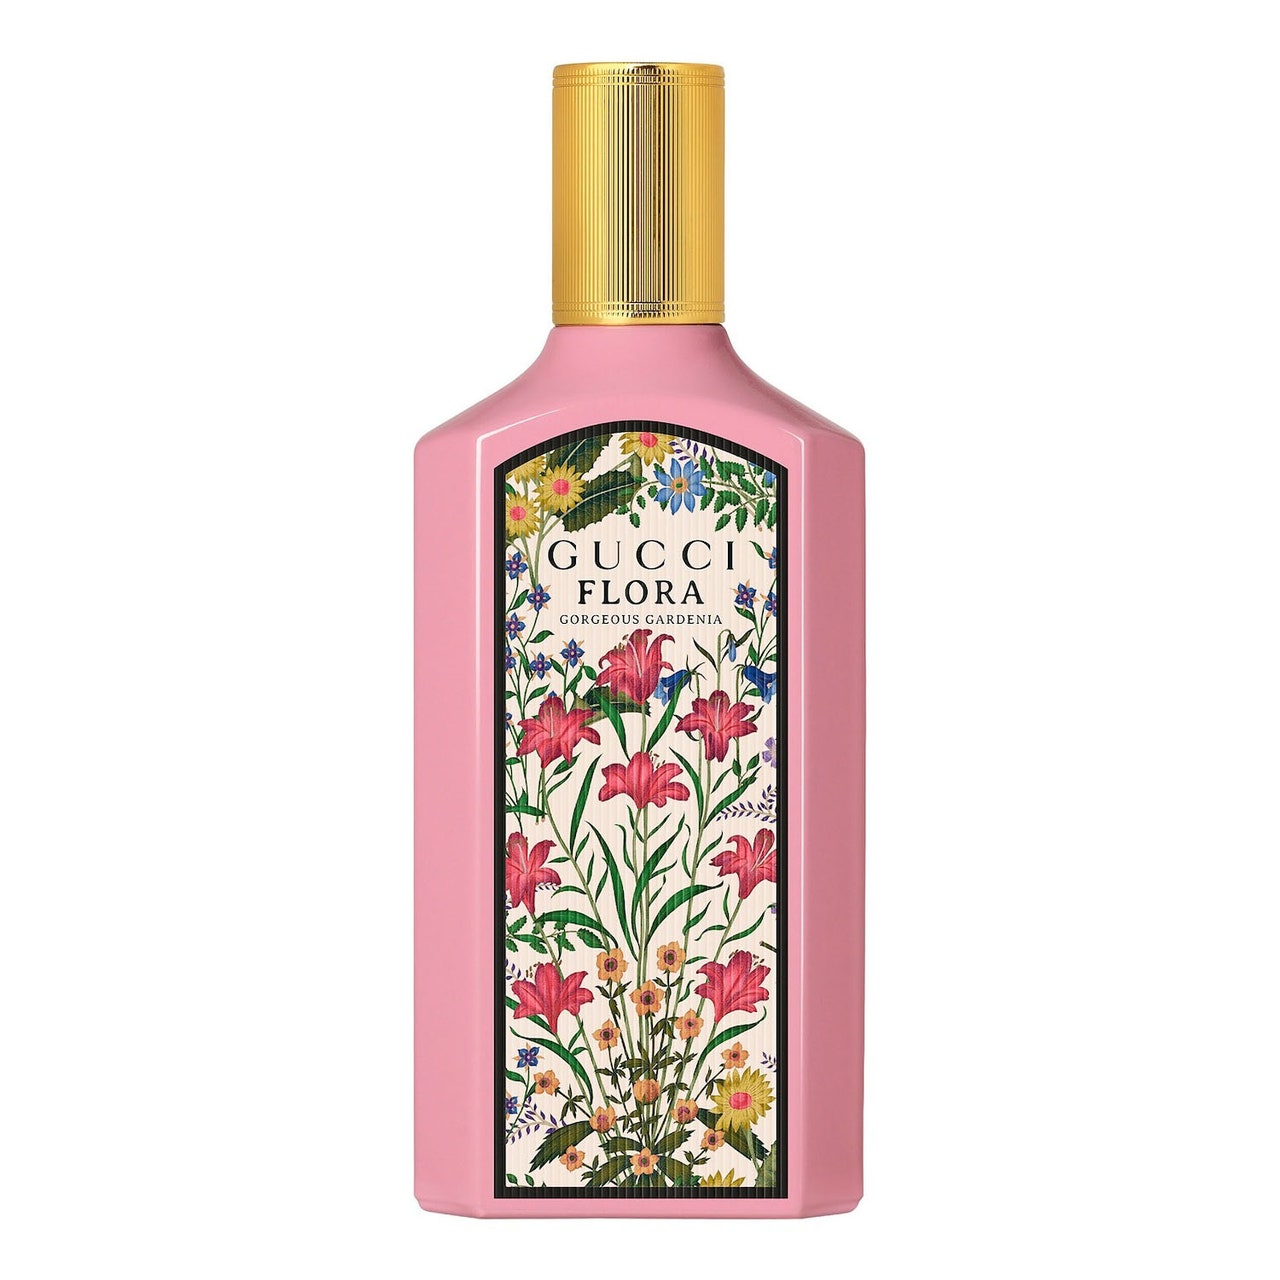 Gucci Flora Wunderschönes Gardenia Eau de Parfum in rosafarbener Blumenflasche mit goldenem Verschluss auf weißem Hintergrund